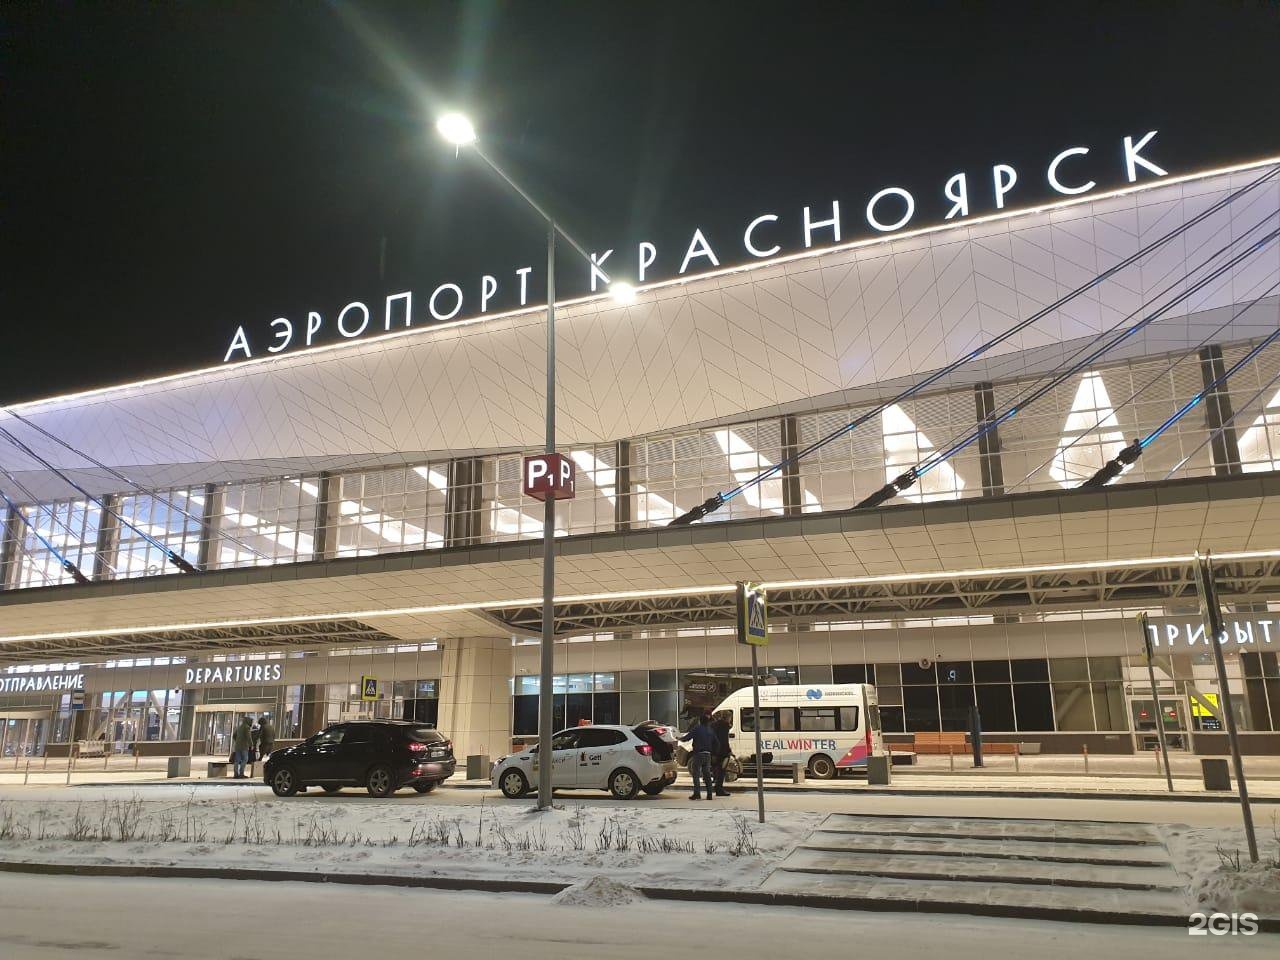 Аэропорт им Хворостовского Красноярск